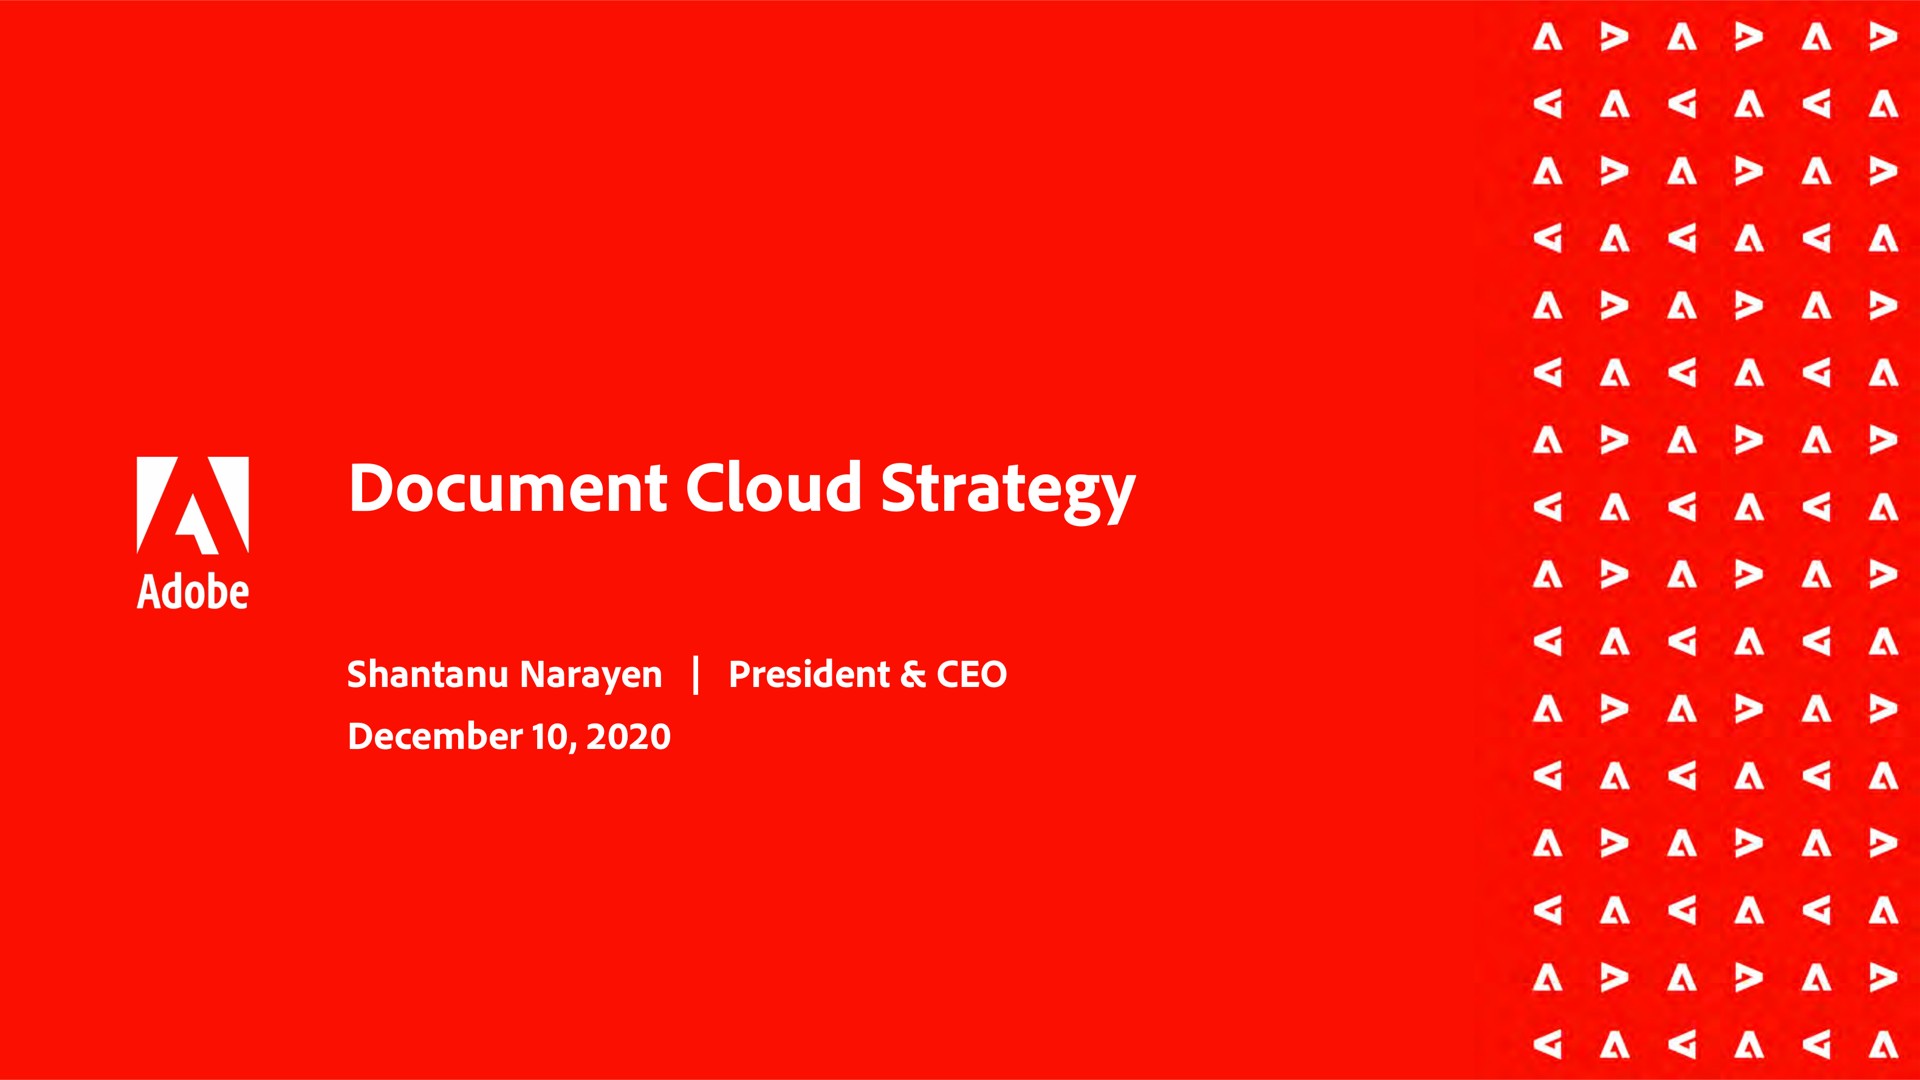 document cloud strategy a a a a a a a a a a a a a a a a a a a a a | Adobe